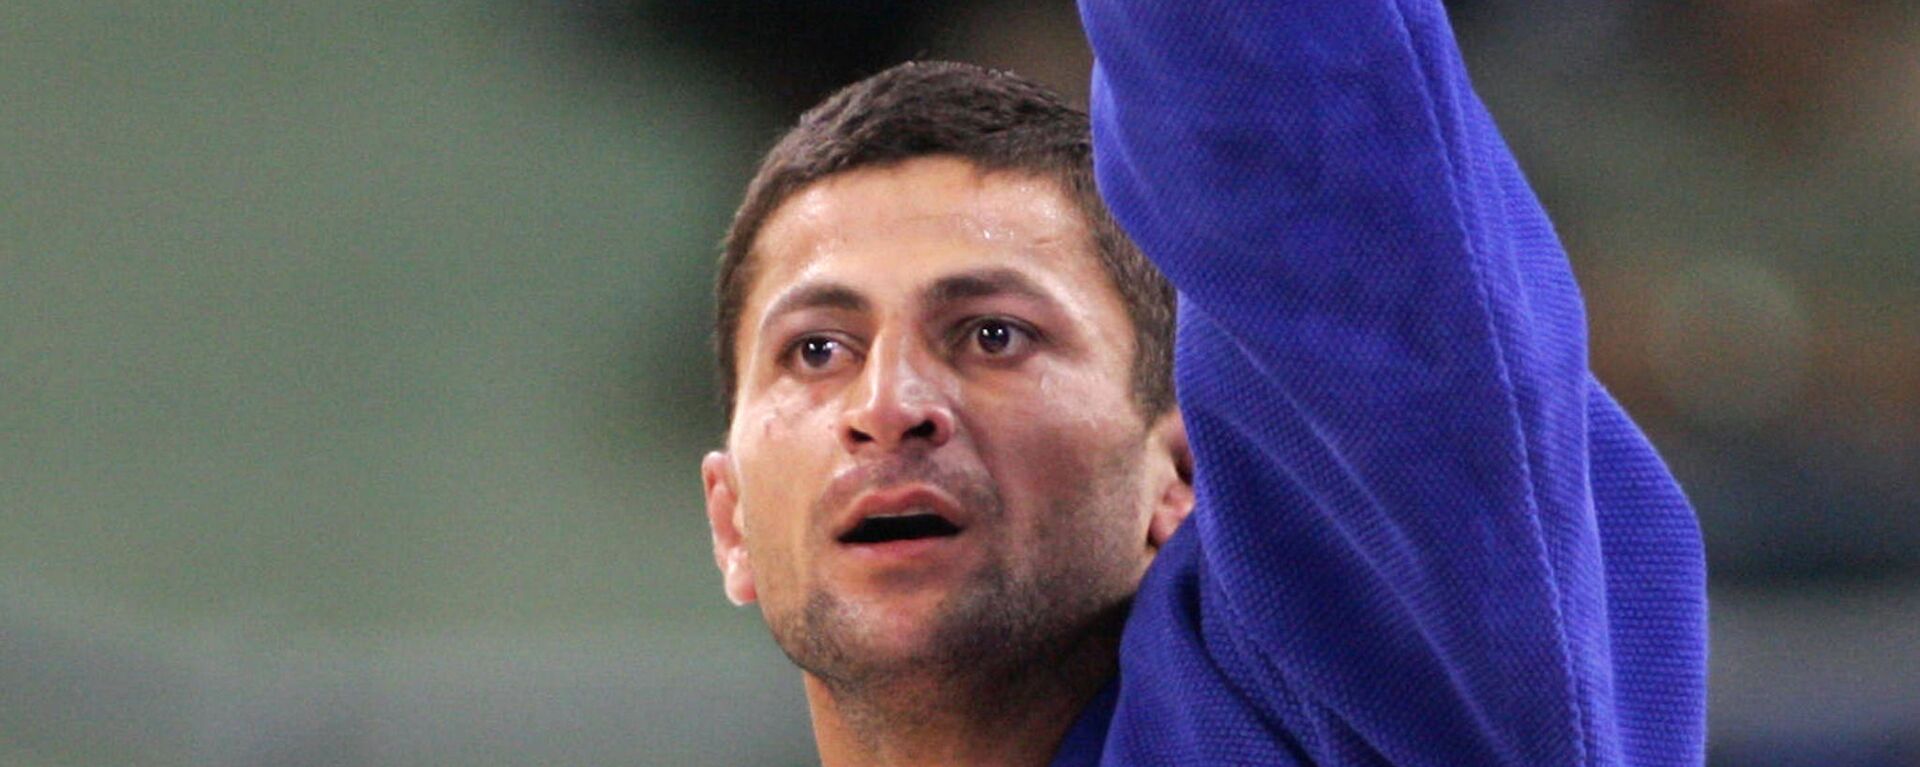 Золотой медалист Грузии Зураб Звиадаури после соревнований по дзюдо среди мужчин до 90 кг на Олимпийских играх 2004 года в Афинах  - Sputnik Грузия, 1920, 29.11.2021